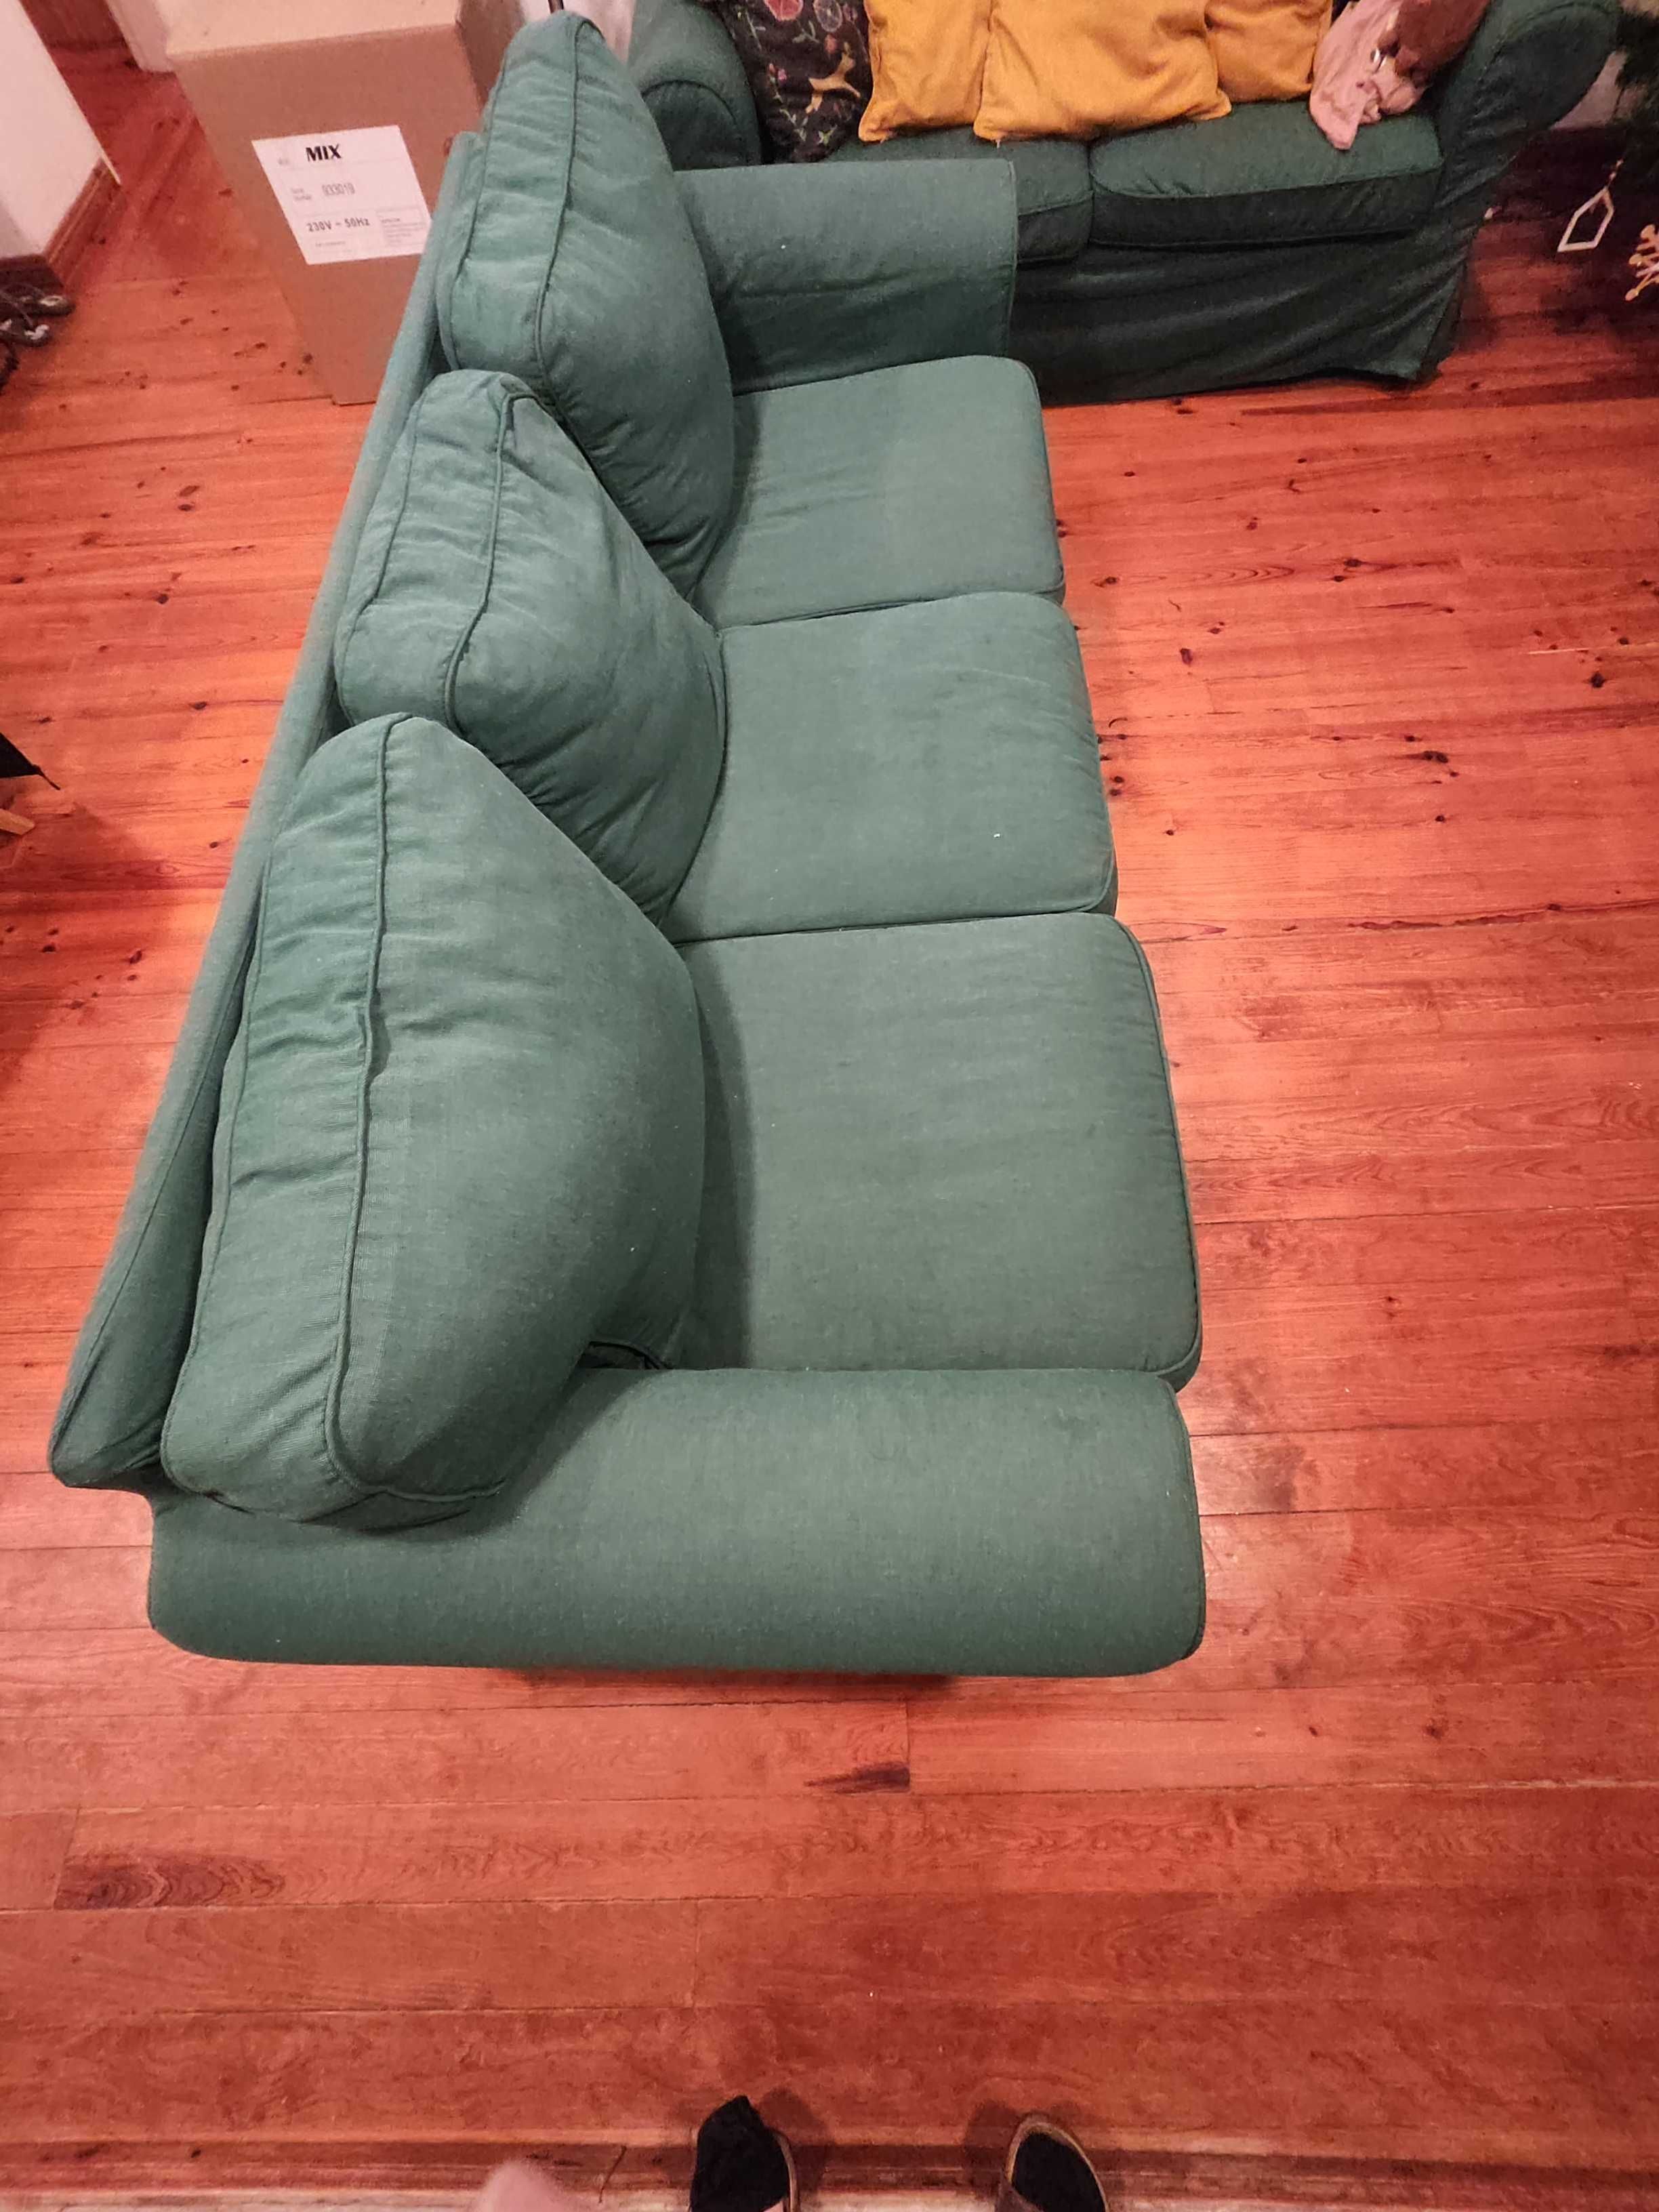 Sofa Erktop Ikea